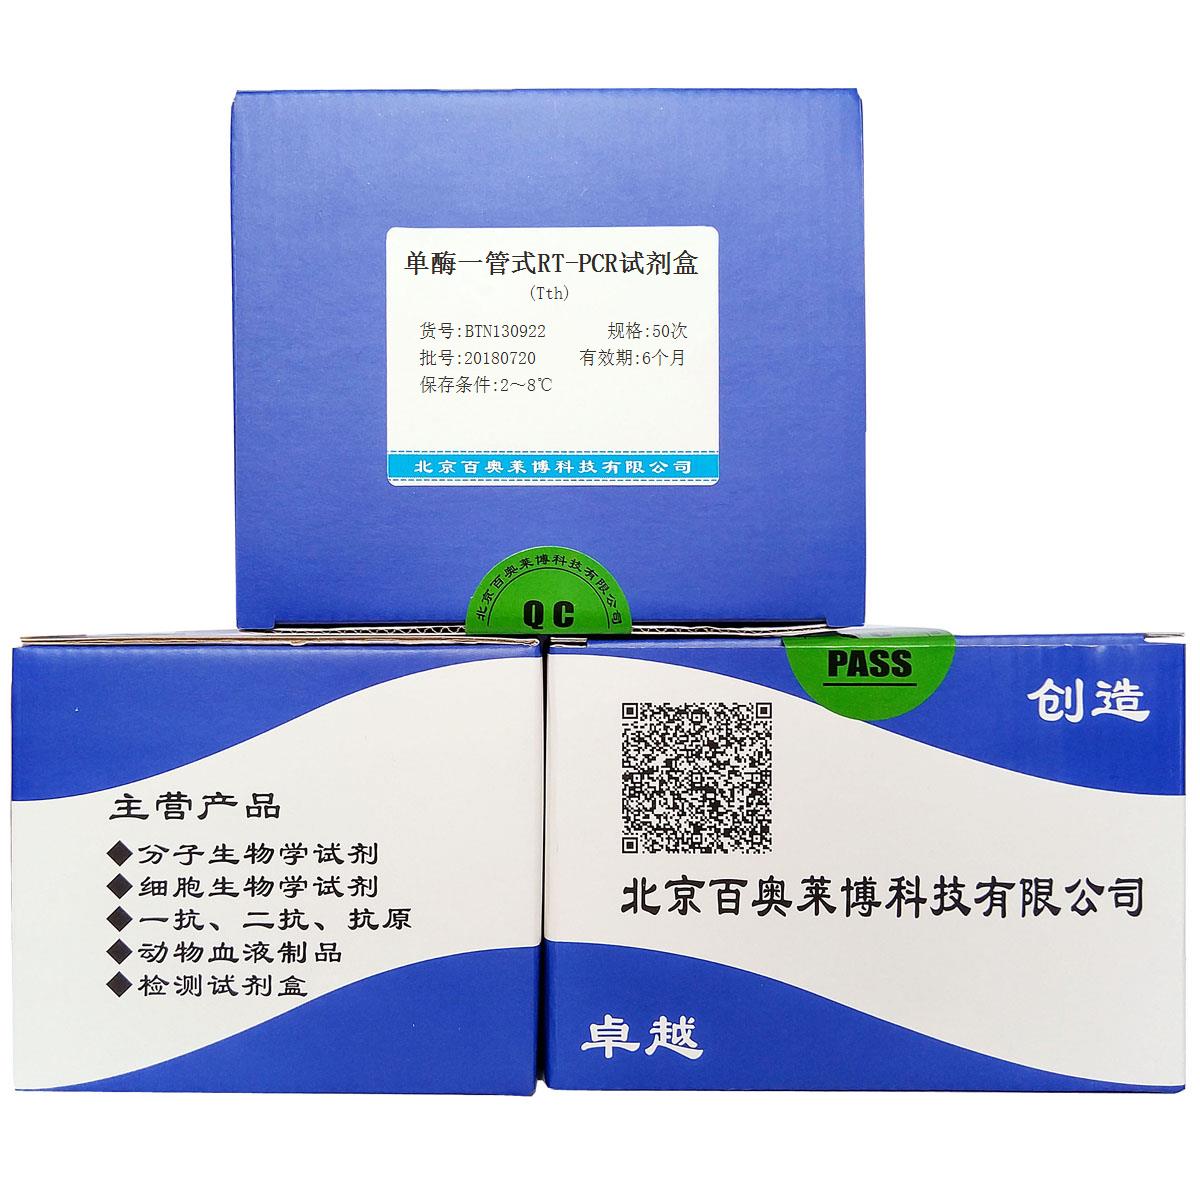 单酶一管式RT-PCR试剂盒(Tth)